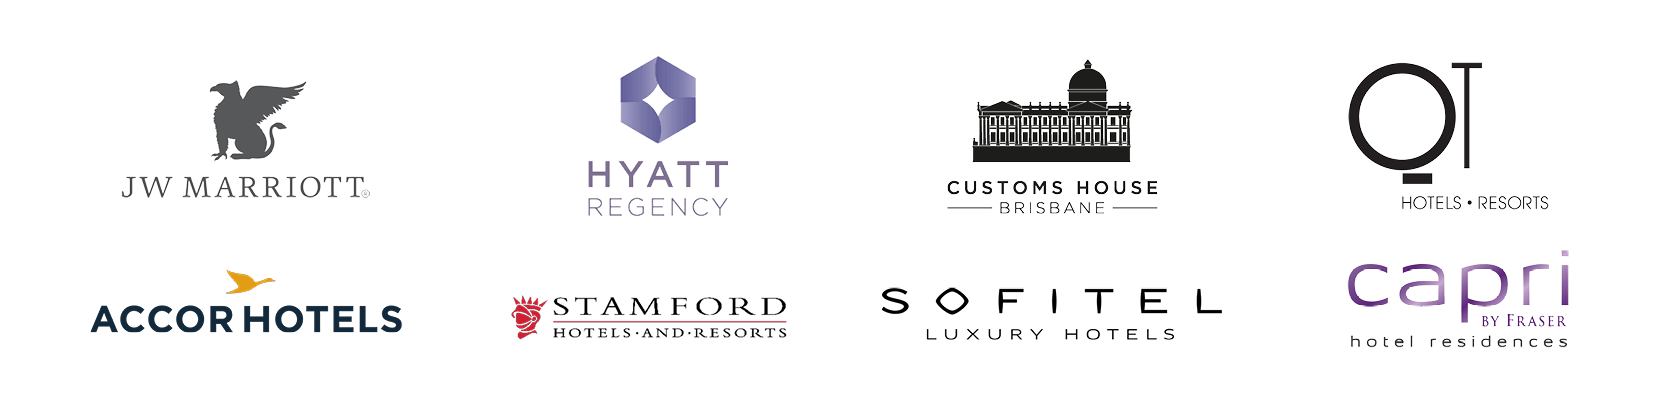 hospitality_hotel logos